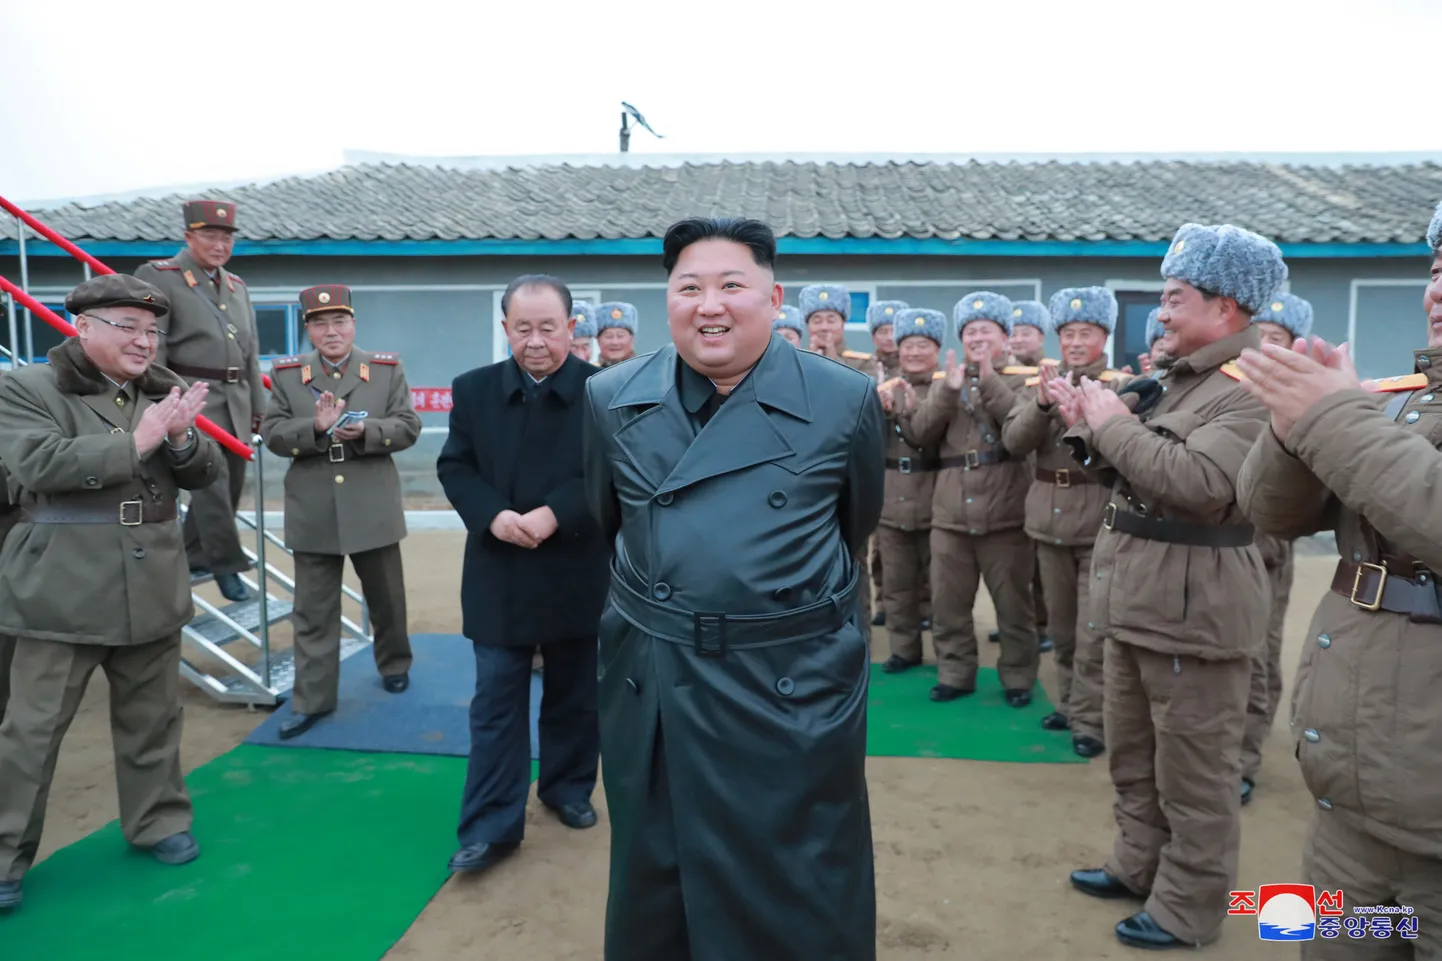 Kim Jong-un 28.novembril koos sõjaväelastega jälgimas uue raketisüsteemi katsetust